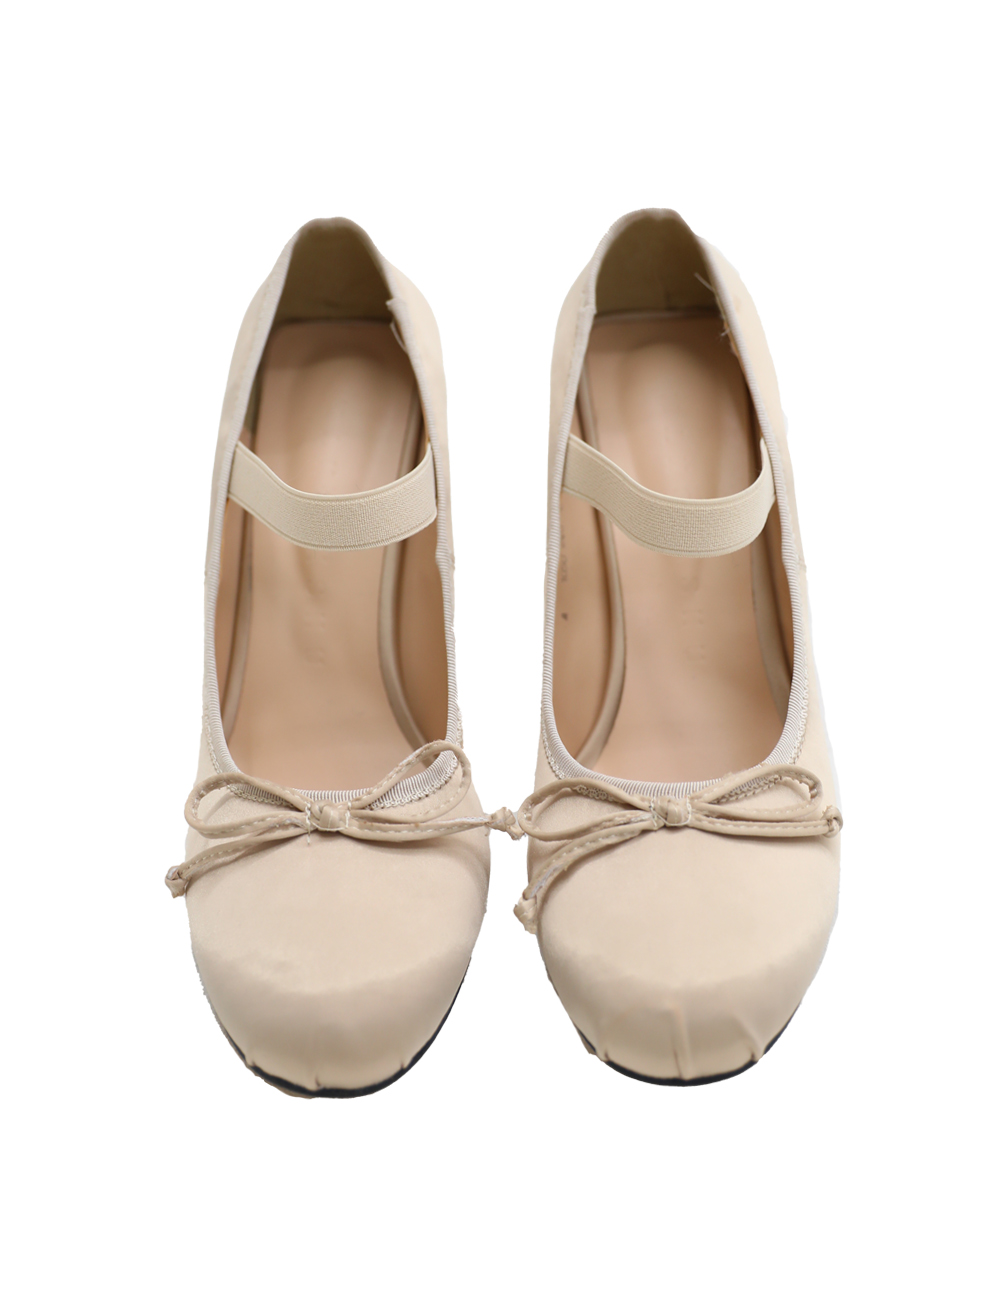 ballet shoes (2 colors)